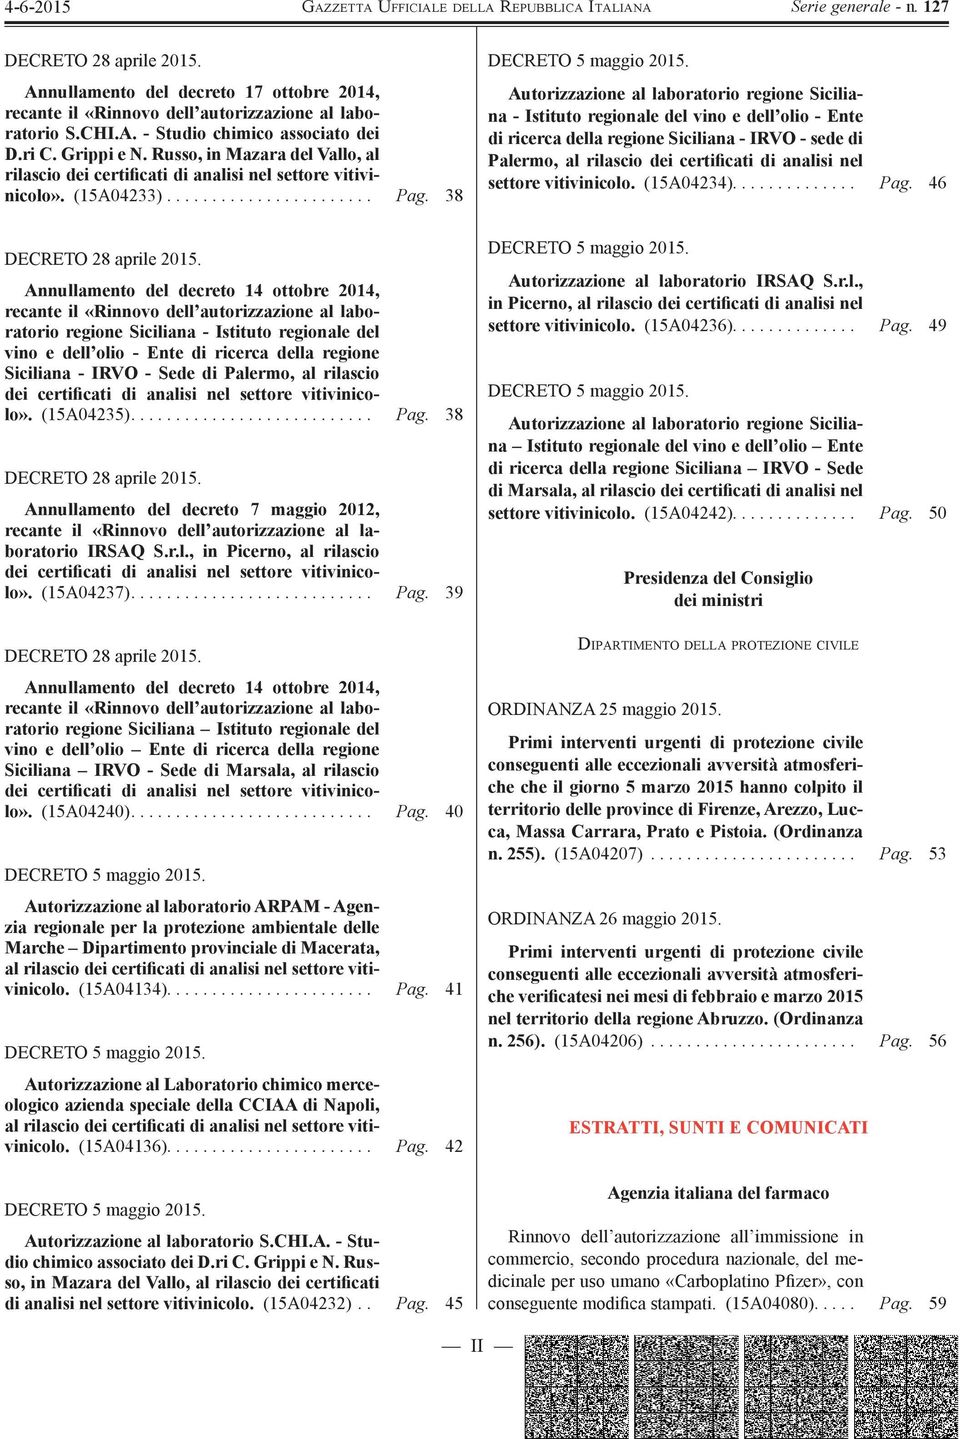 Annullamento del decreto 14 ottobre 2014, recante il «Rinnovo dell autorizzazione al laboratorio regione Siciliana - Istituto regionale del vino e dell olio - Ente di ricerca della regione Siciliana